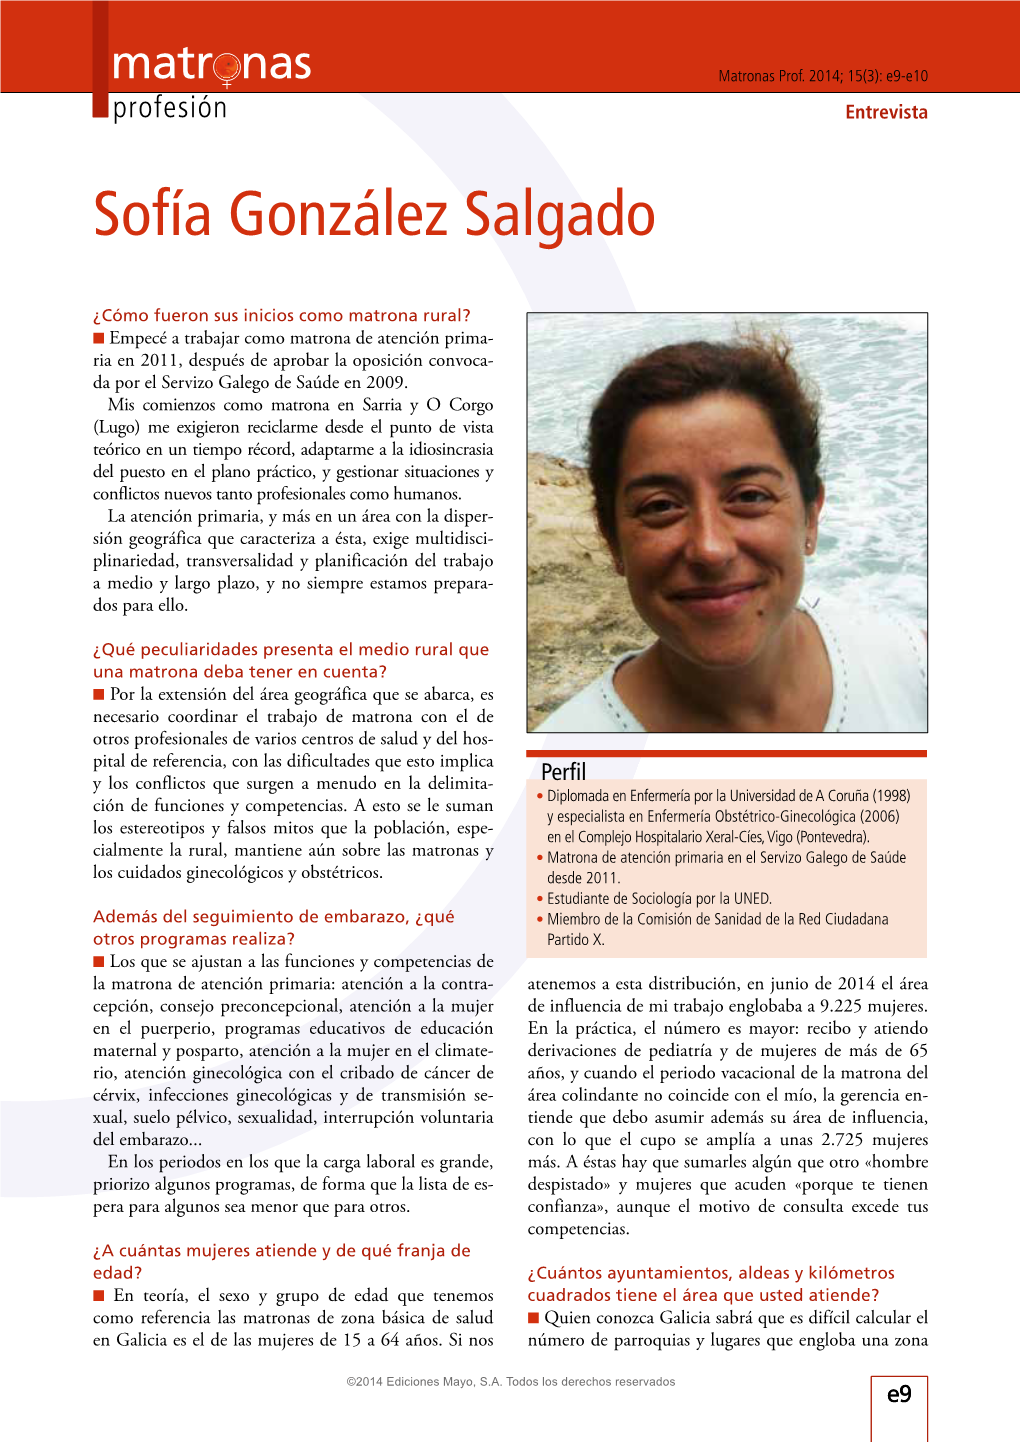 Sofía González Salgado